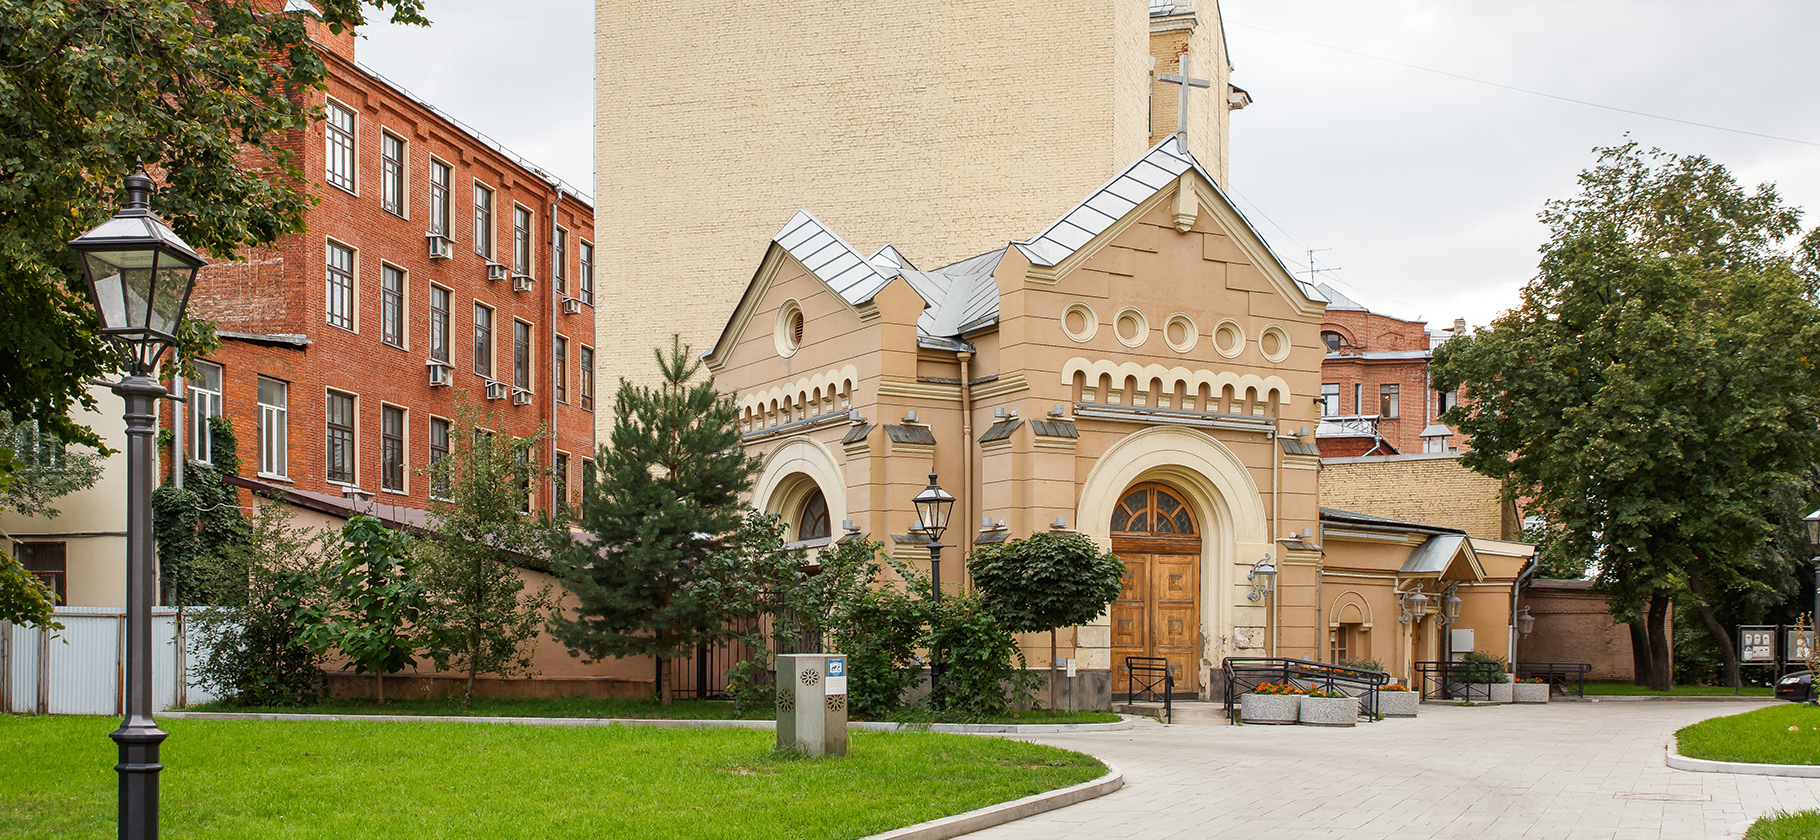 Рыцари, башни и дом из кино: 10 живописных мест для пленэра в Москве